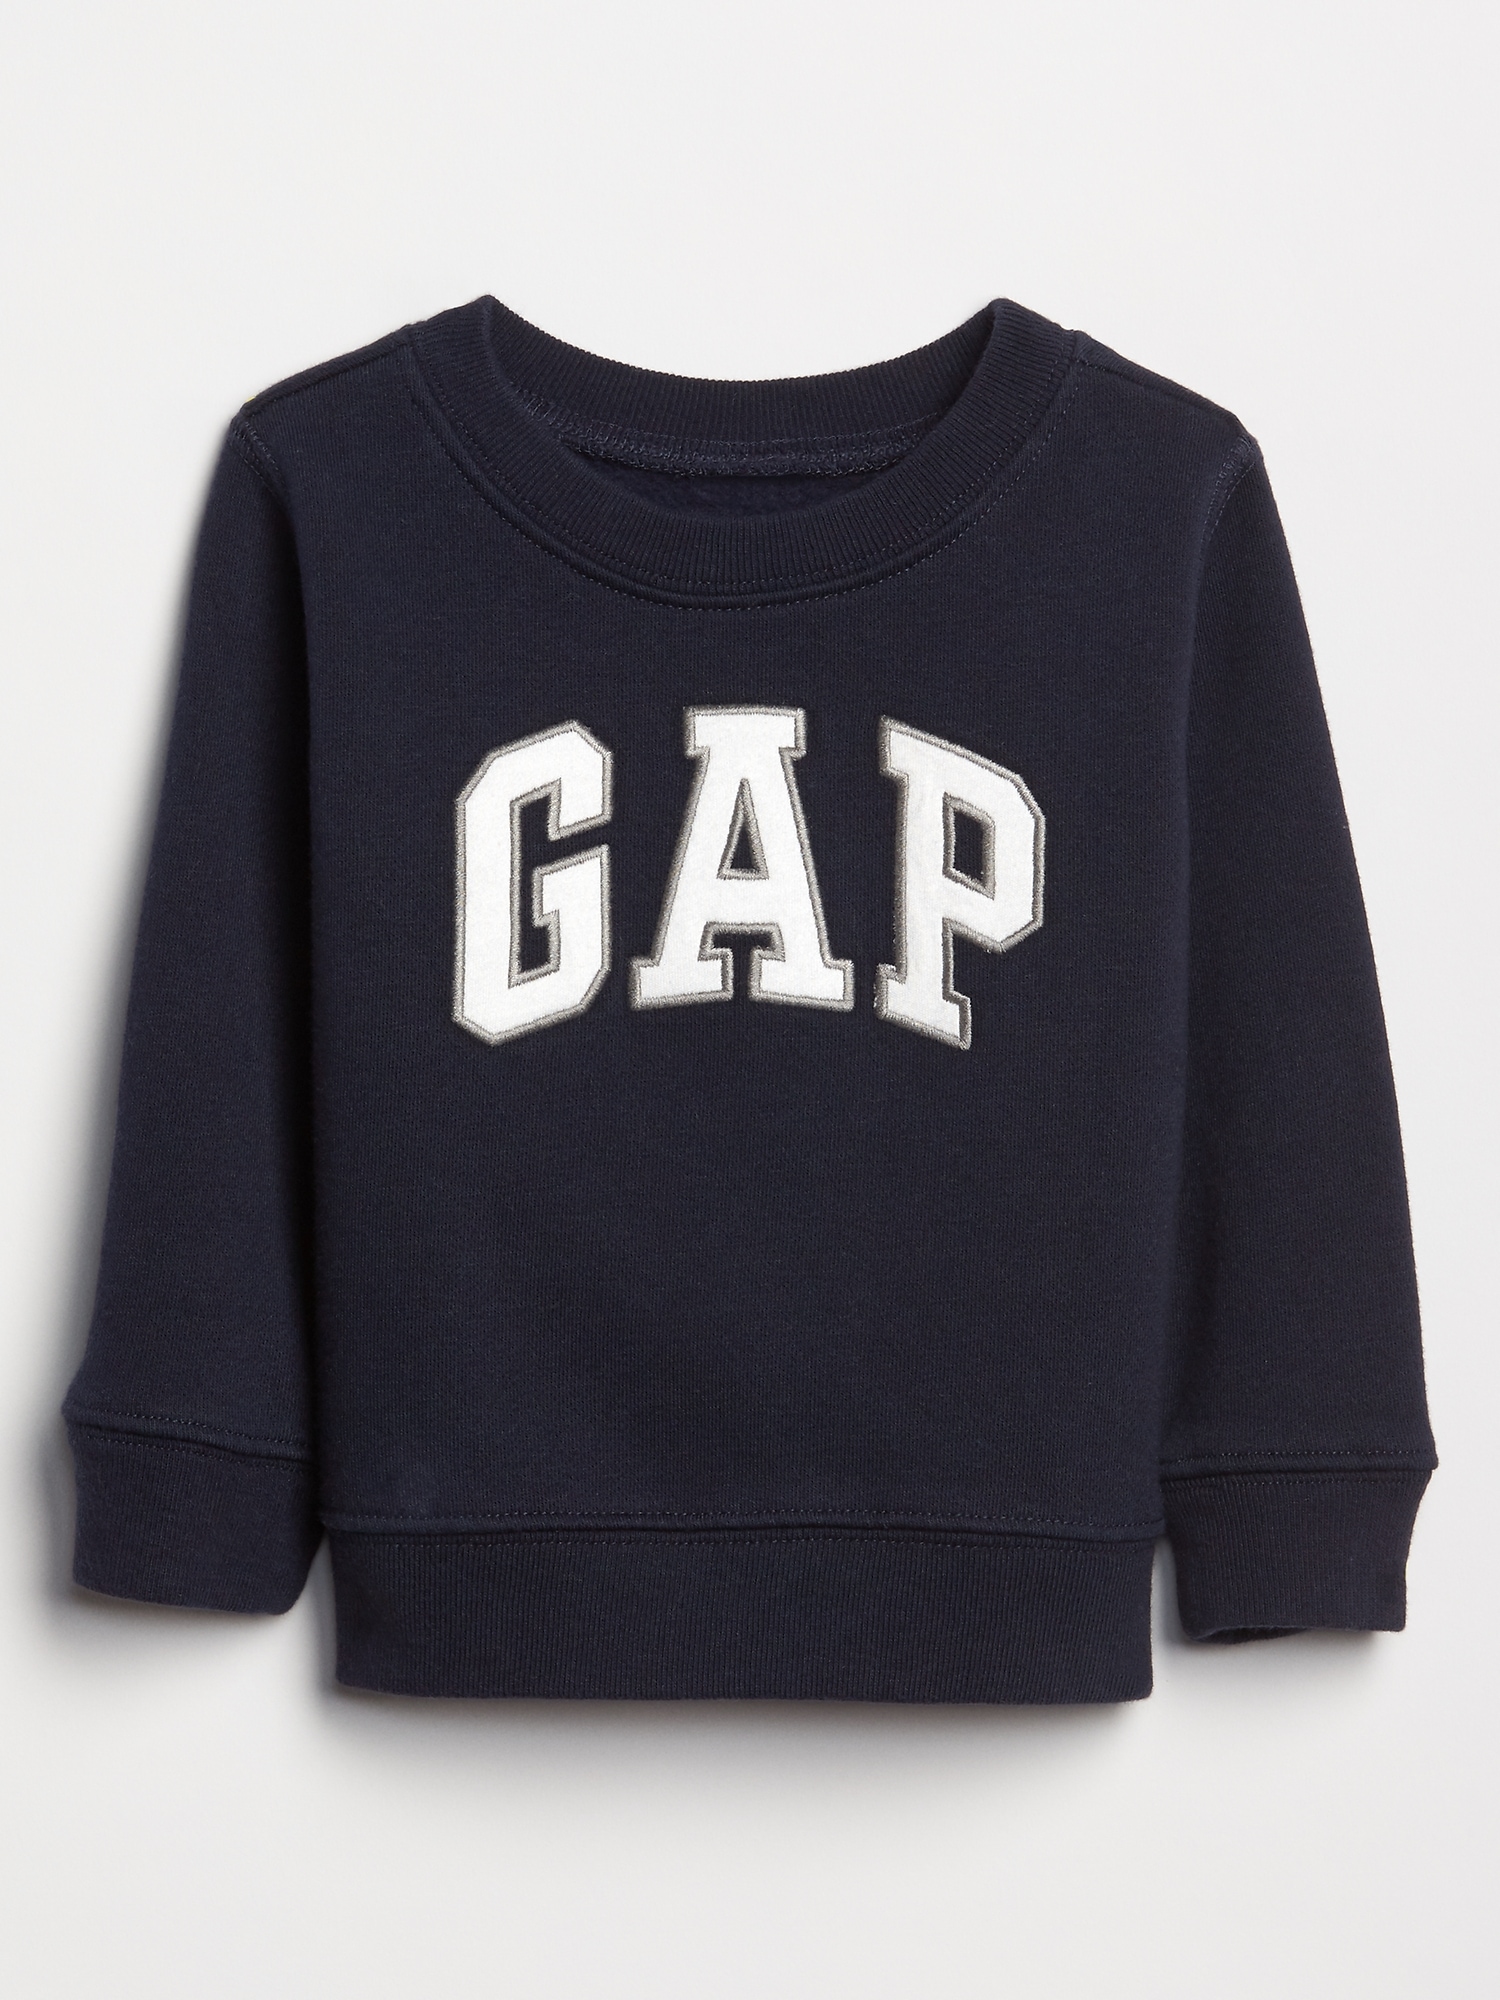 babyGap Logo Pullover | Gap Factory